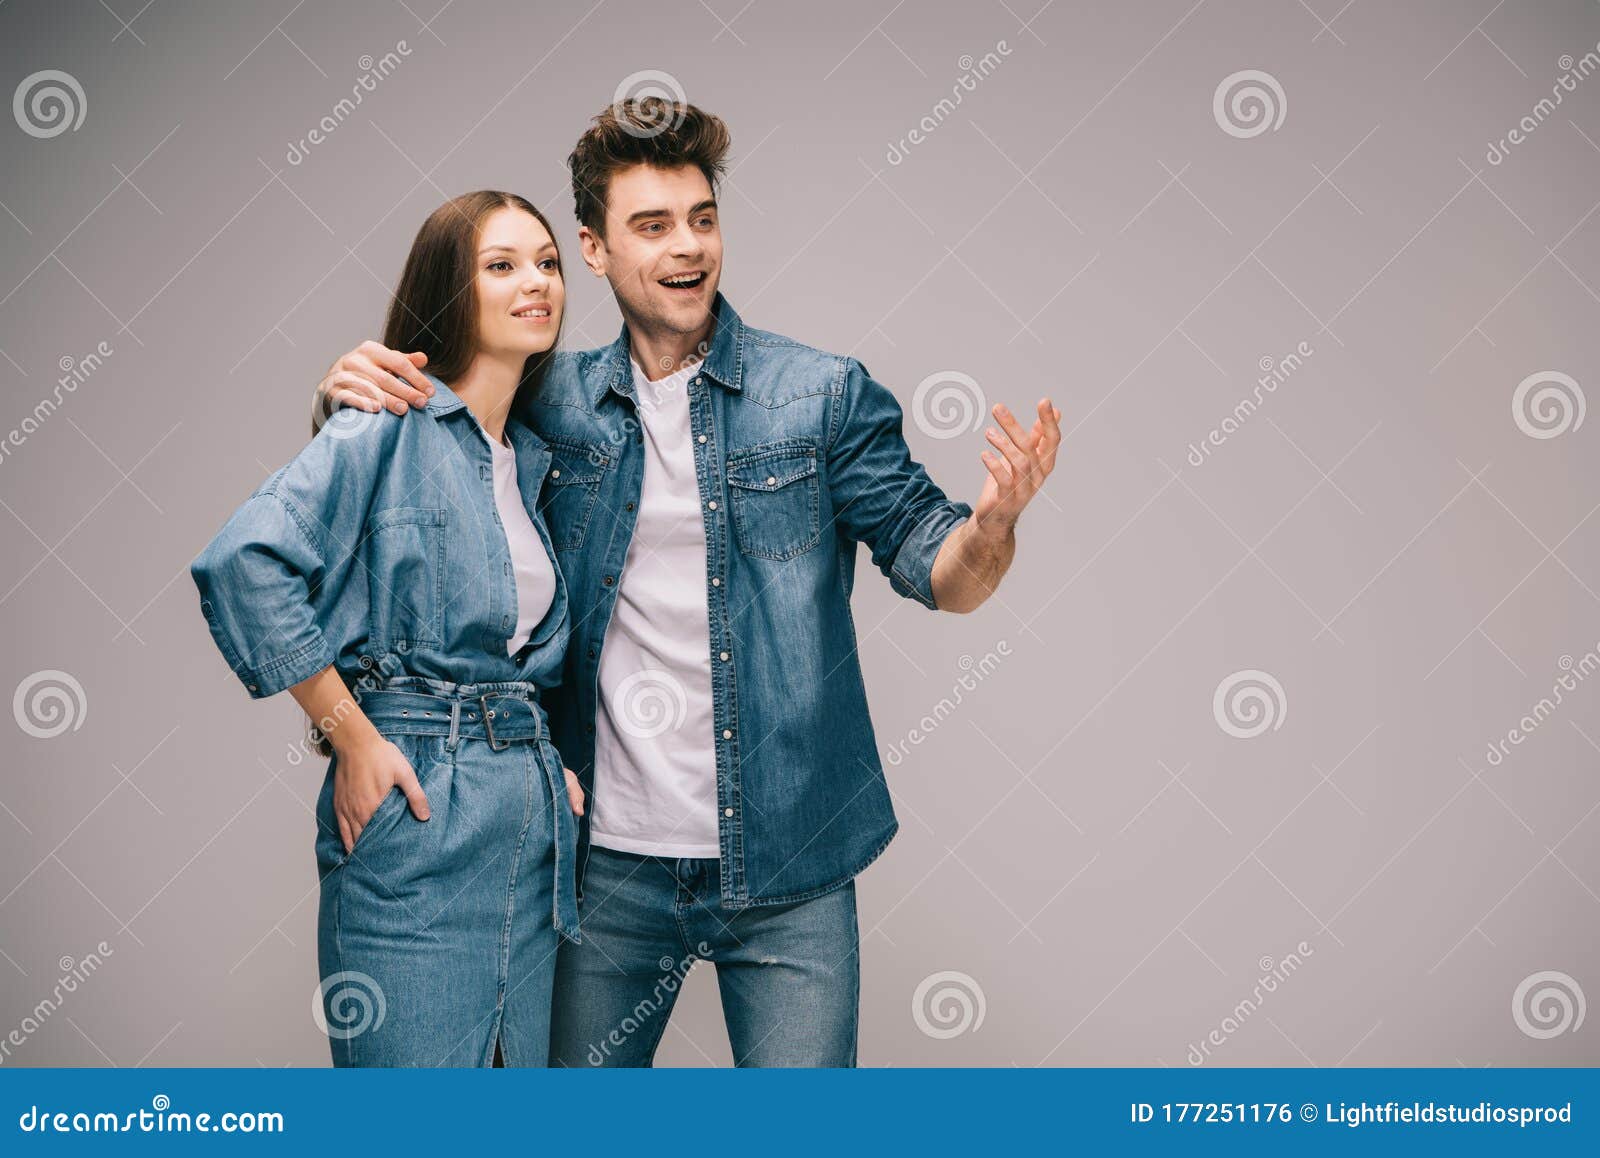 Обнимать рубашку. Девушка в платье парень в джинсах. Рубашка обнимашка. Фотосьь\МКА взрослой пары в джинсах.